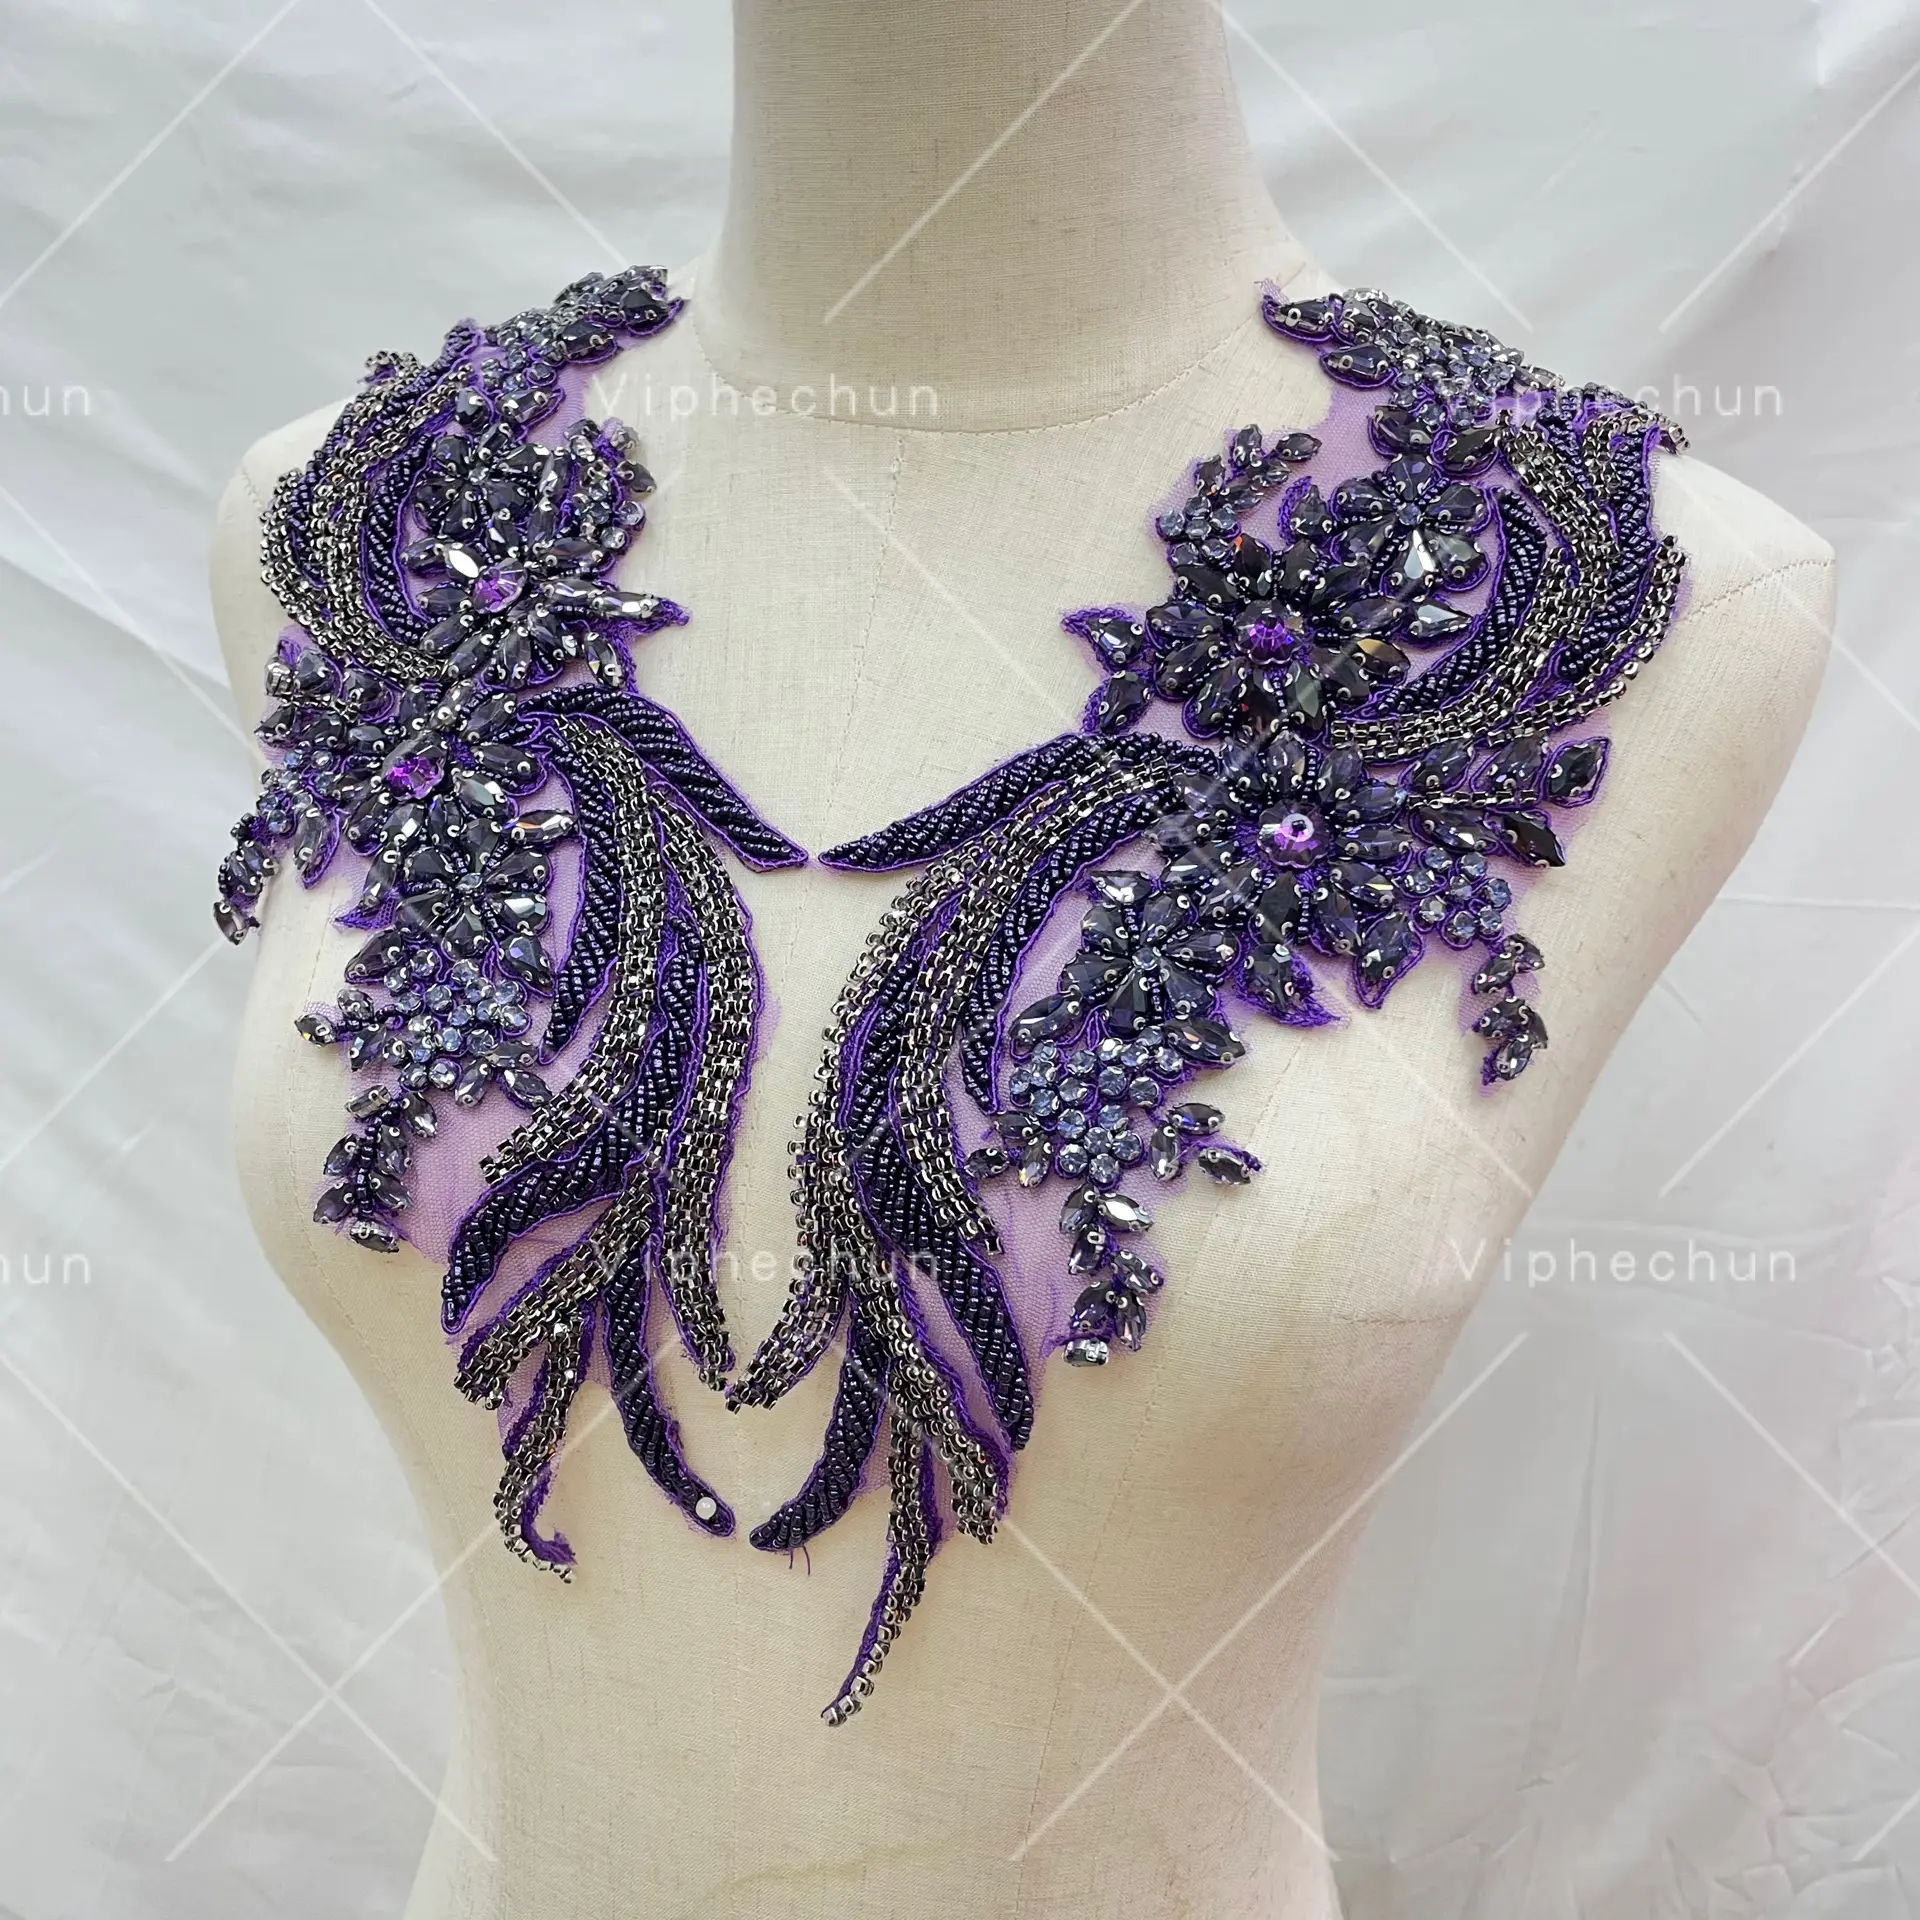 絶妙な紫色の手作りラインストーンアップリケ服アクセサリー